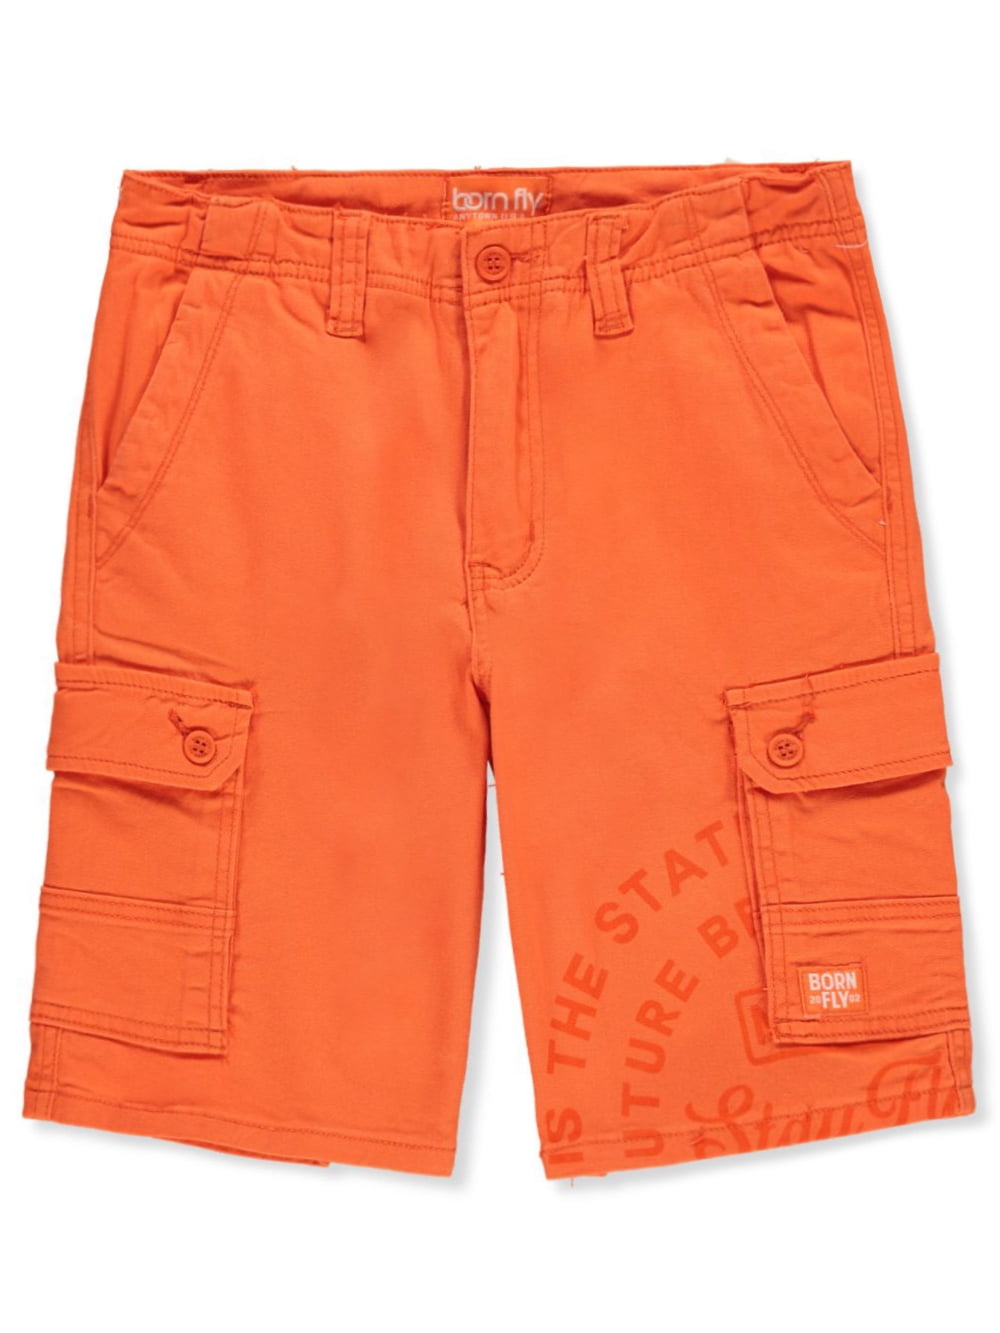 Born Fly Boys\' Twill Cargo Shorts - orange, 18 (Big Boys)